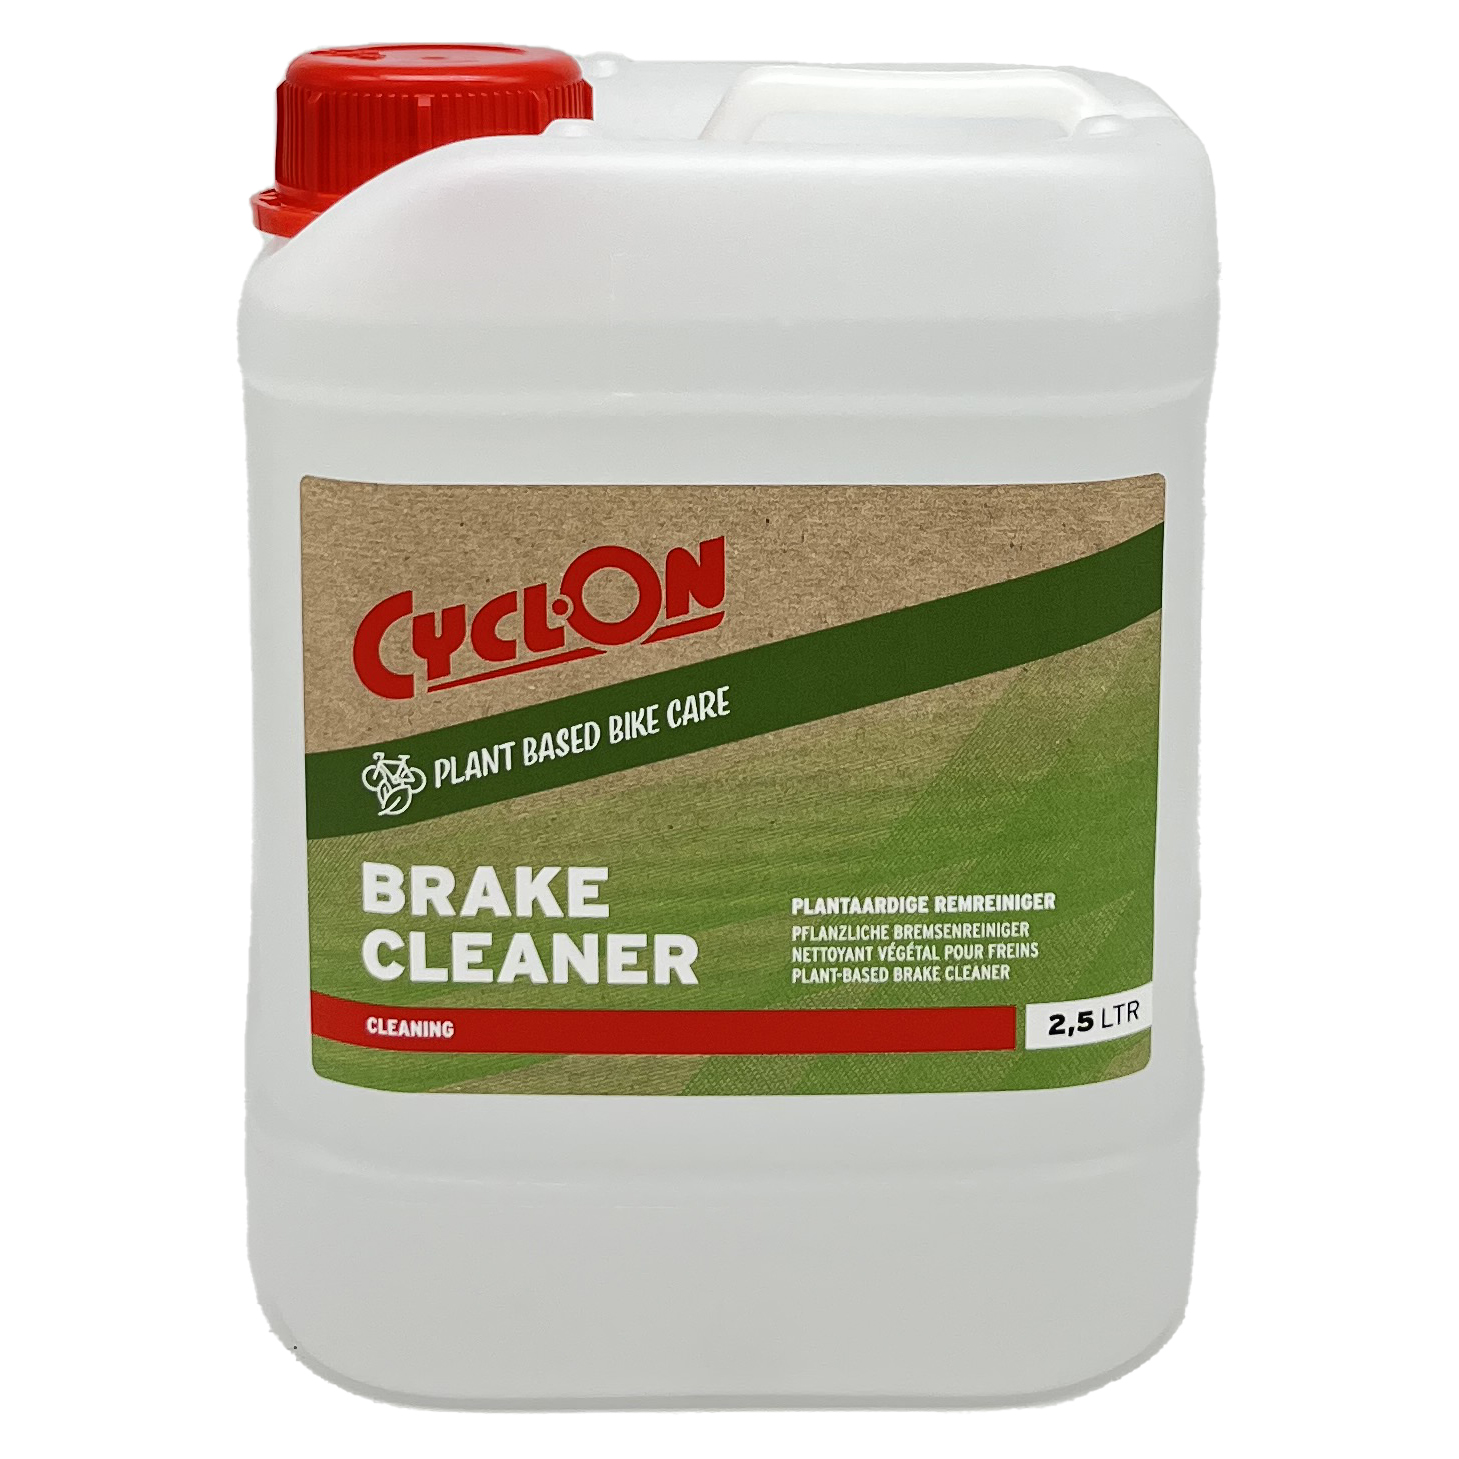 Plant Based Brake Cleaner 2,5 liter